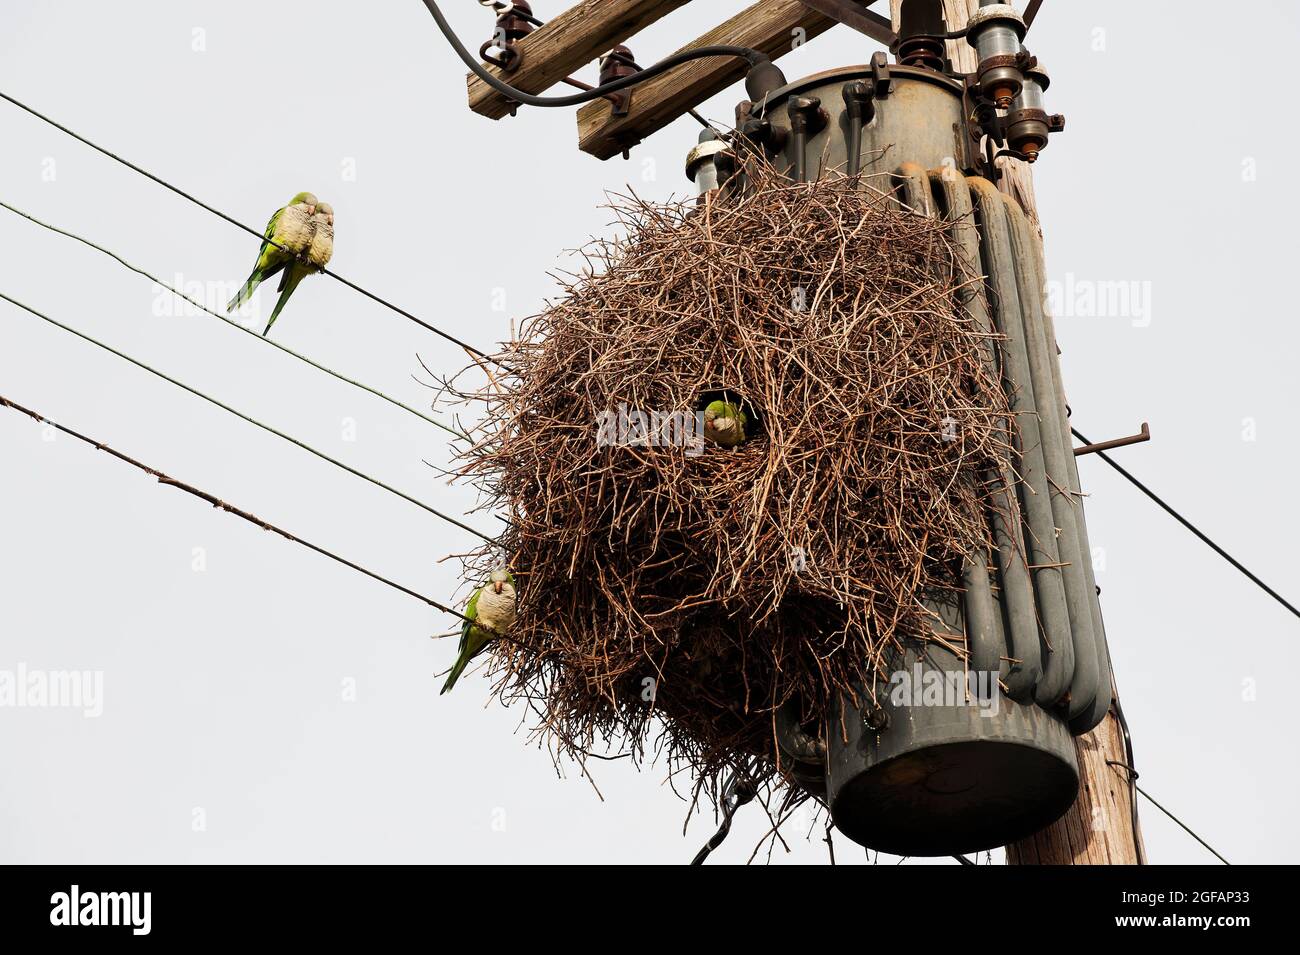 Les parakeets de Monk nichent dans un habitat urbain Banque D'Images